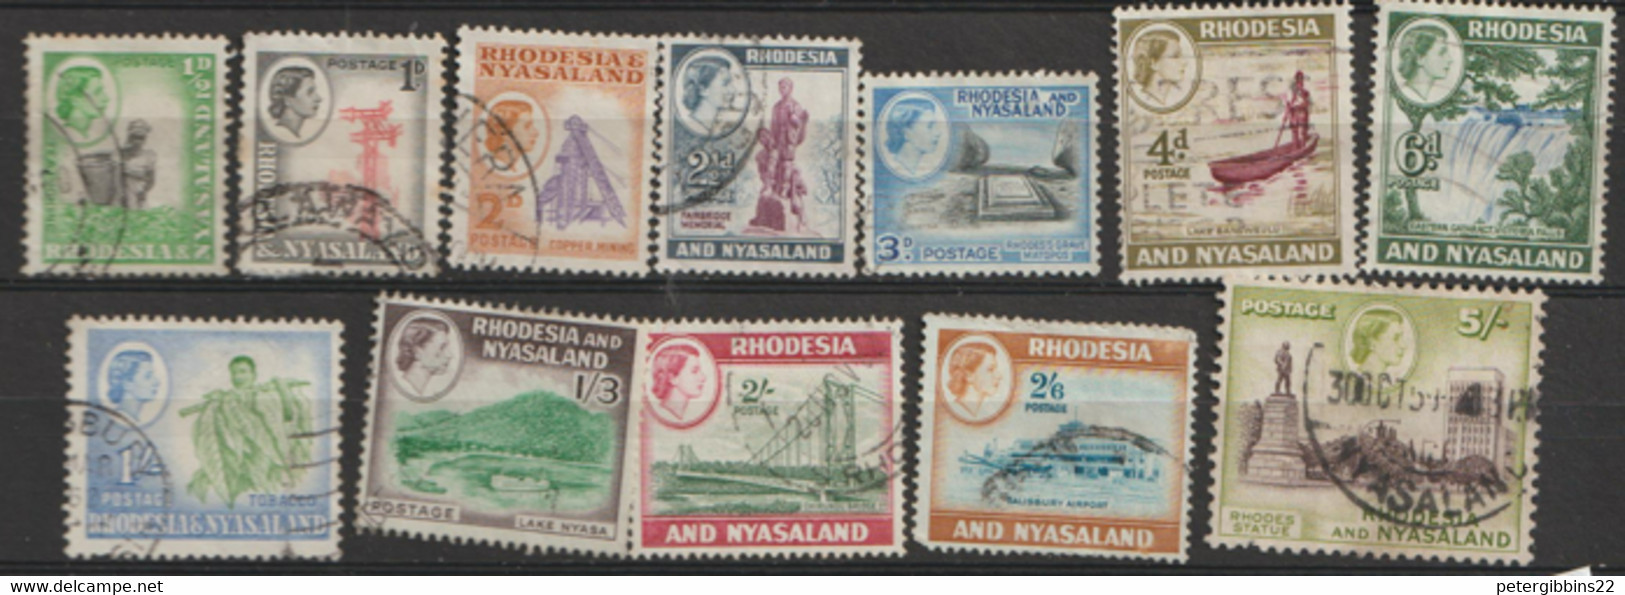 Rhodesia And Nyasaland  1959  Varous Values To 5/-d  Fine Used - Rhodesia & Nyasaland (1954-1963)